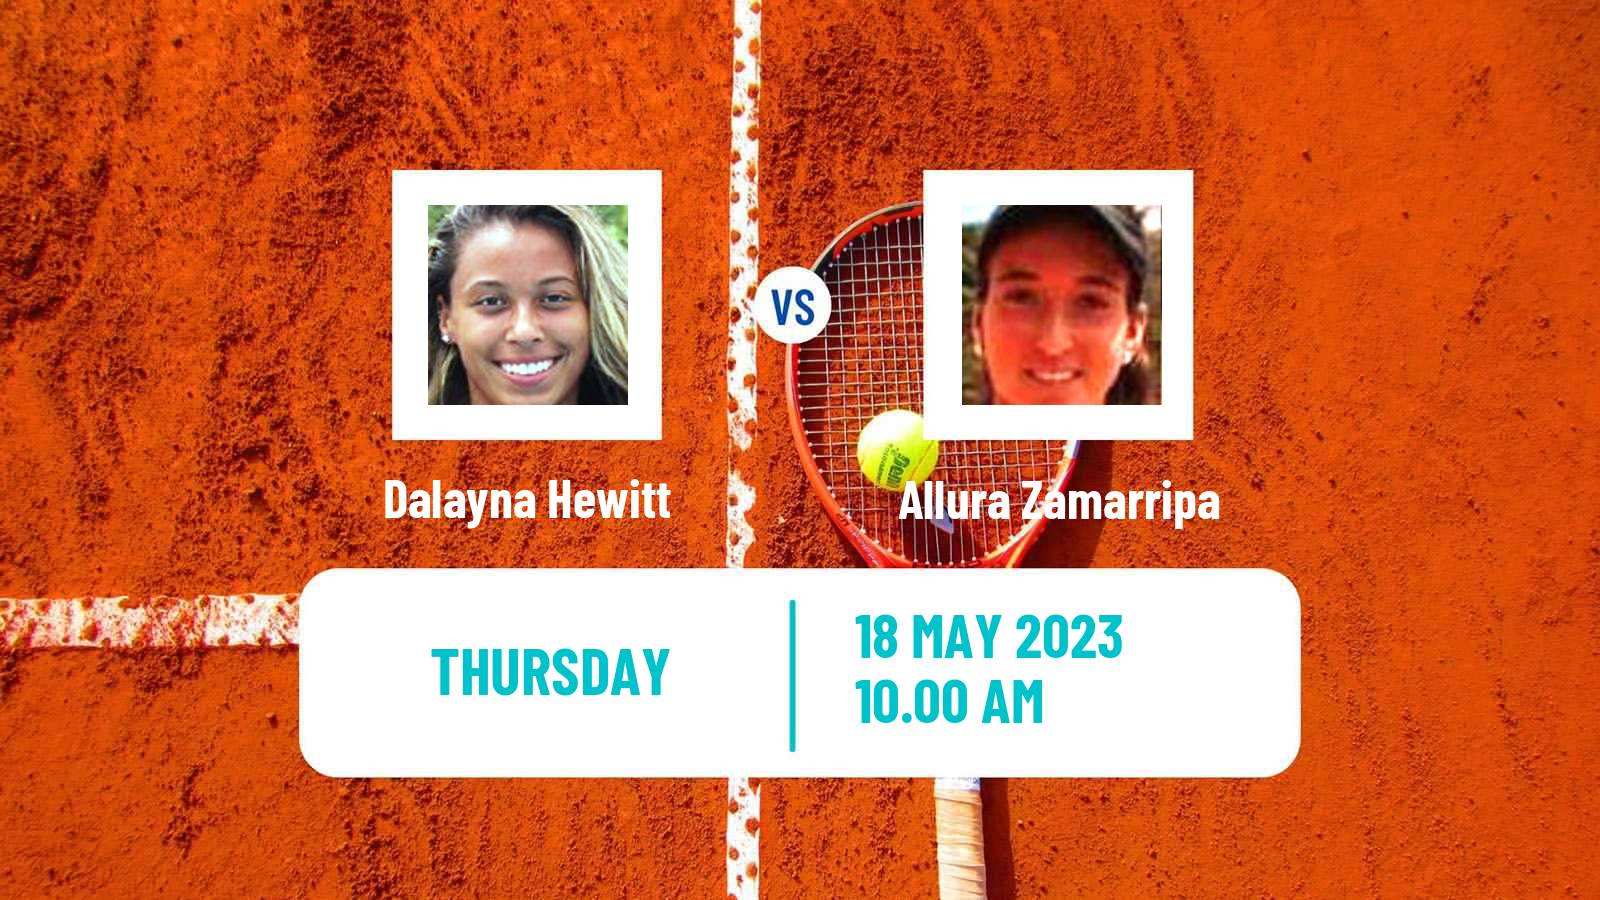 Tennis ITF W60 Pelham Al Women Dalayna Hewitt - Allura Zamarripa